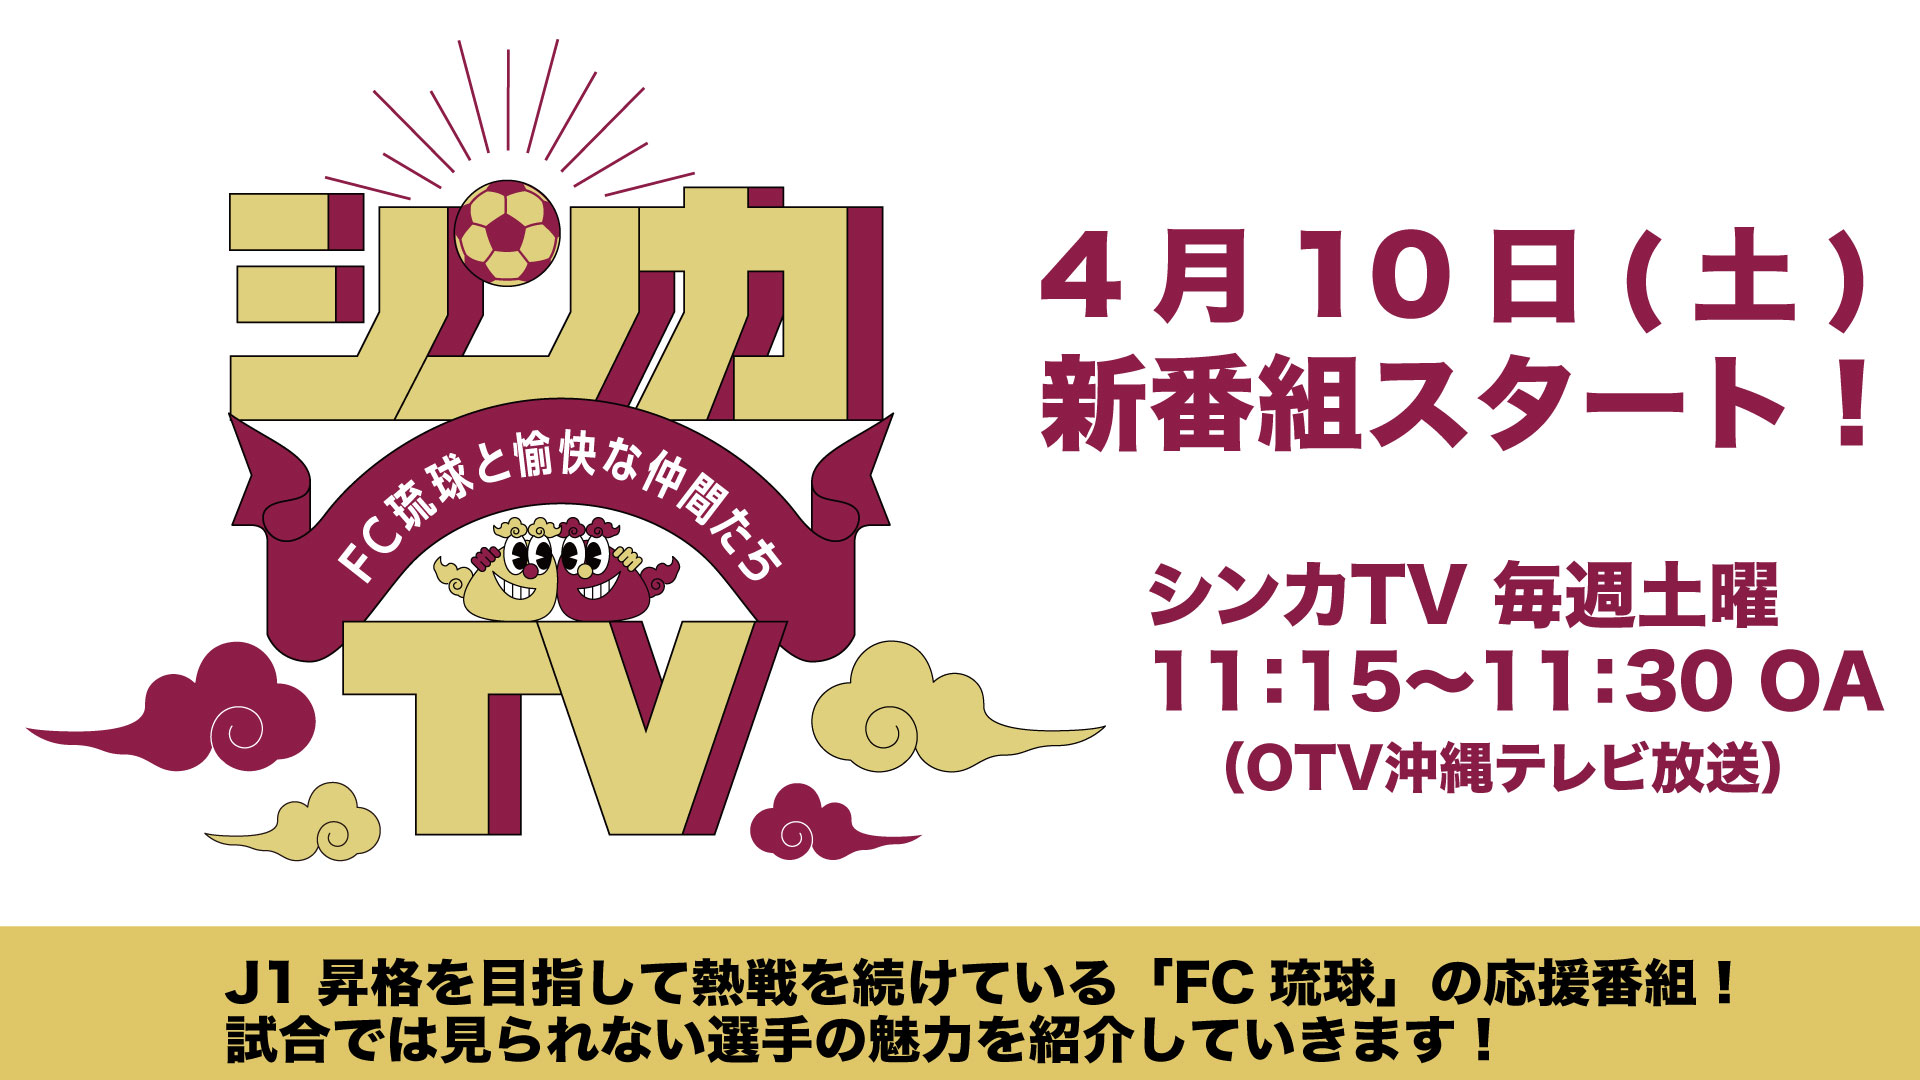 Fc琉球 公式tv番組 シンカtv スタートのお知らせ Fc琉球のプレスリリース